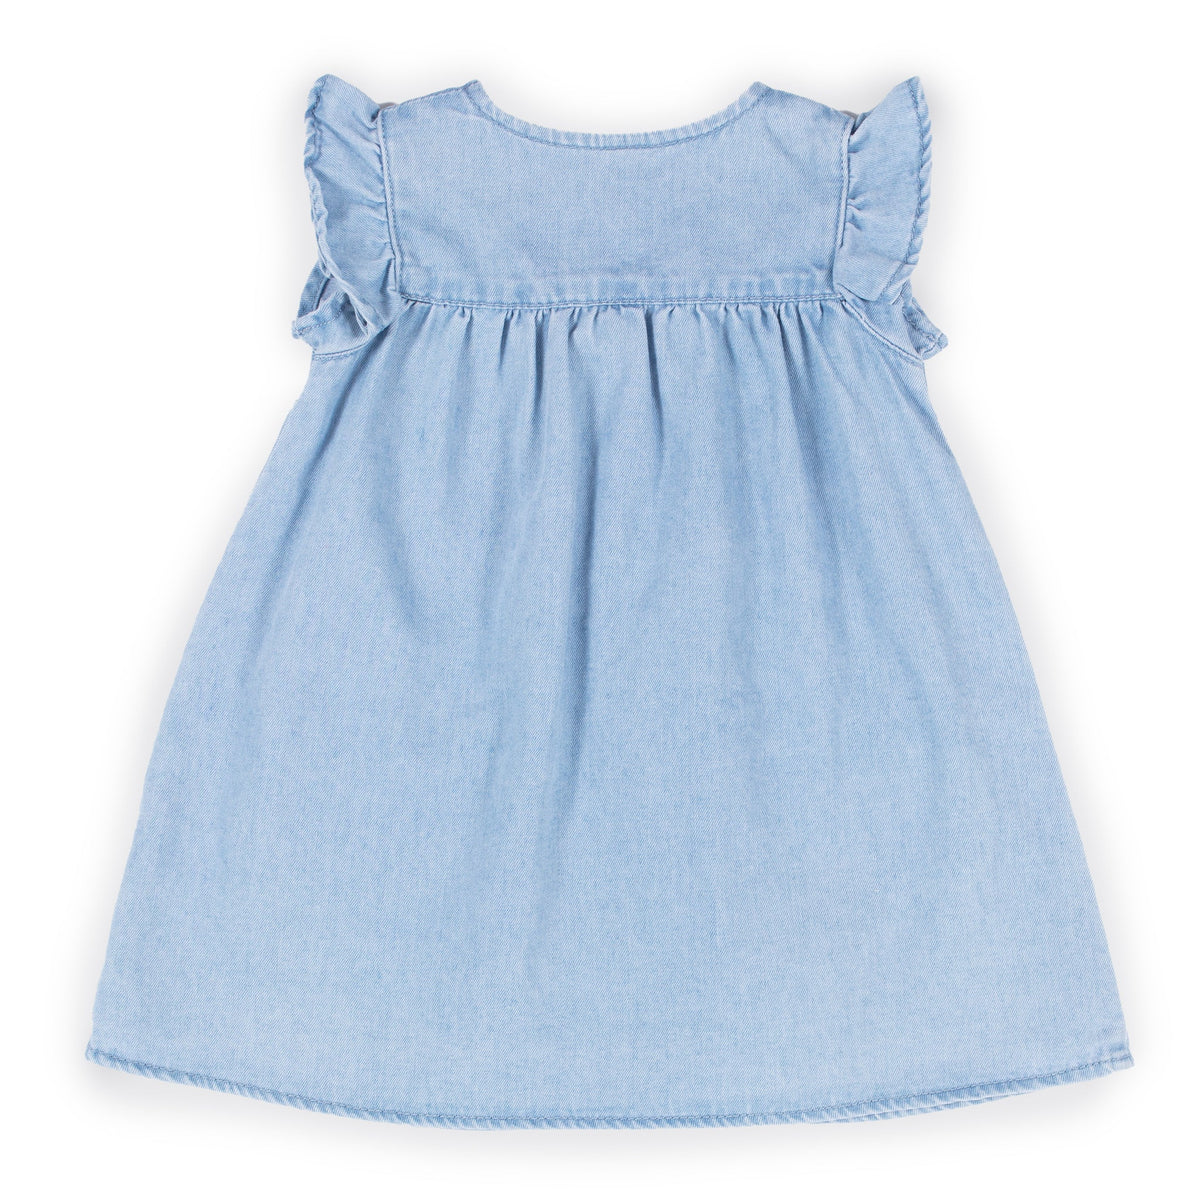 Robe pour bébé fille par Nano | S2352-05 Denim pâle | Boutique Flos, vêtements mode pour bébés et enfants